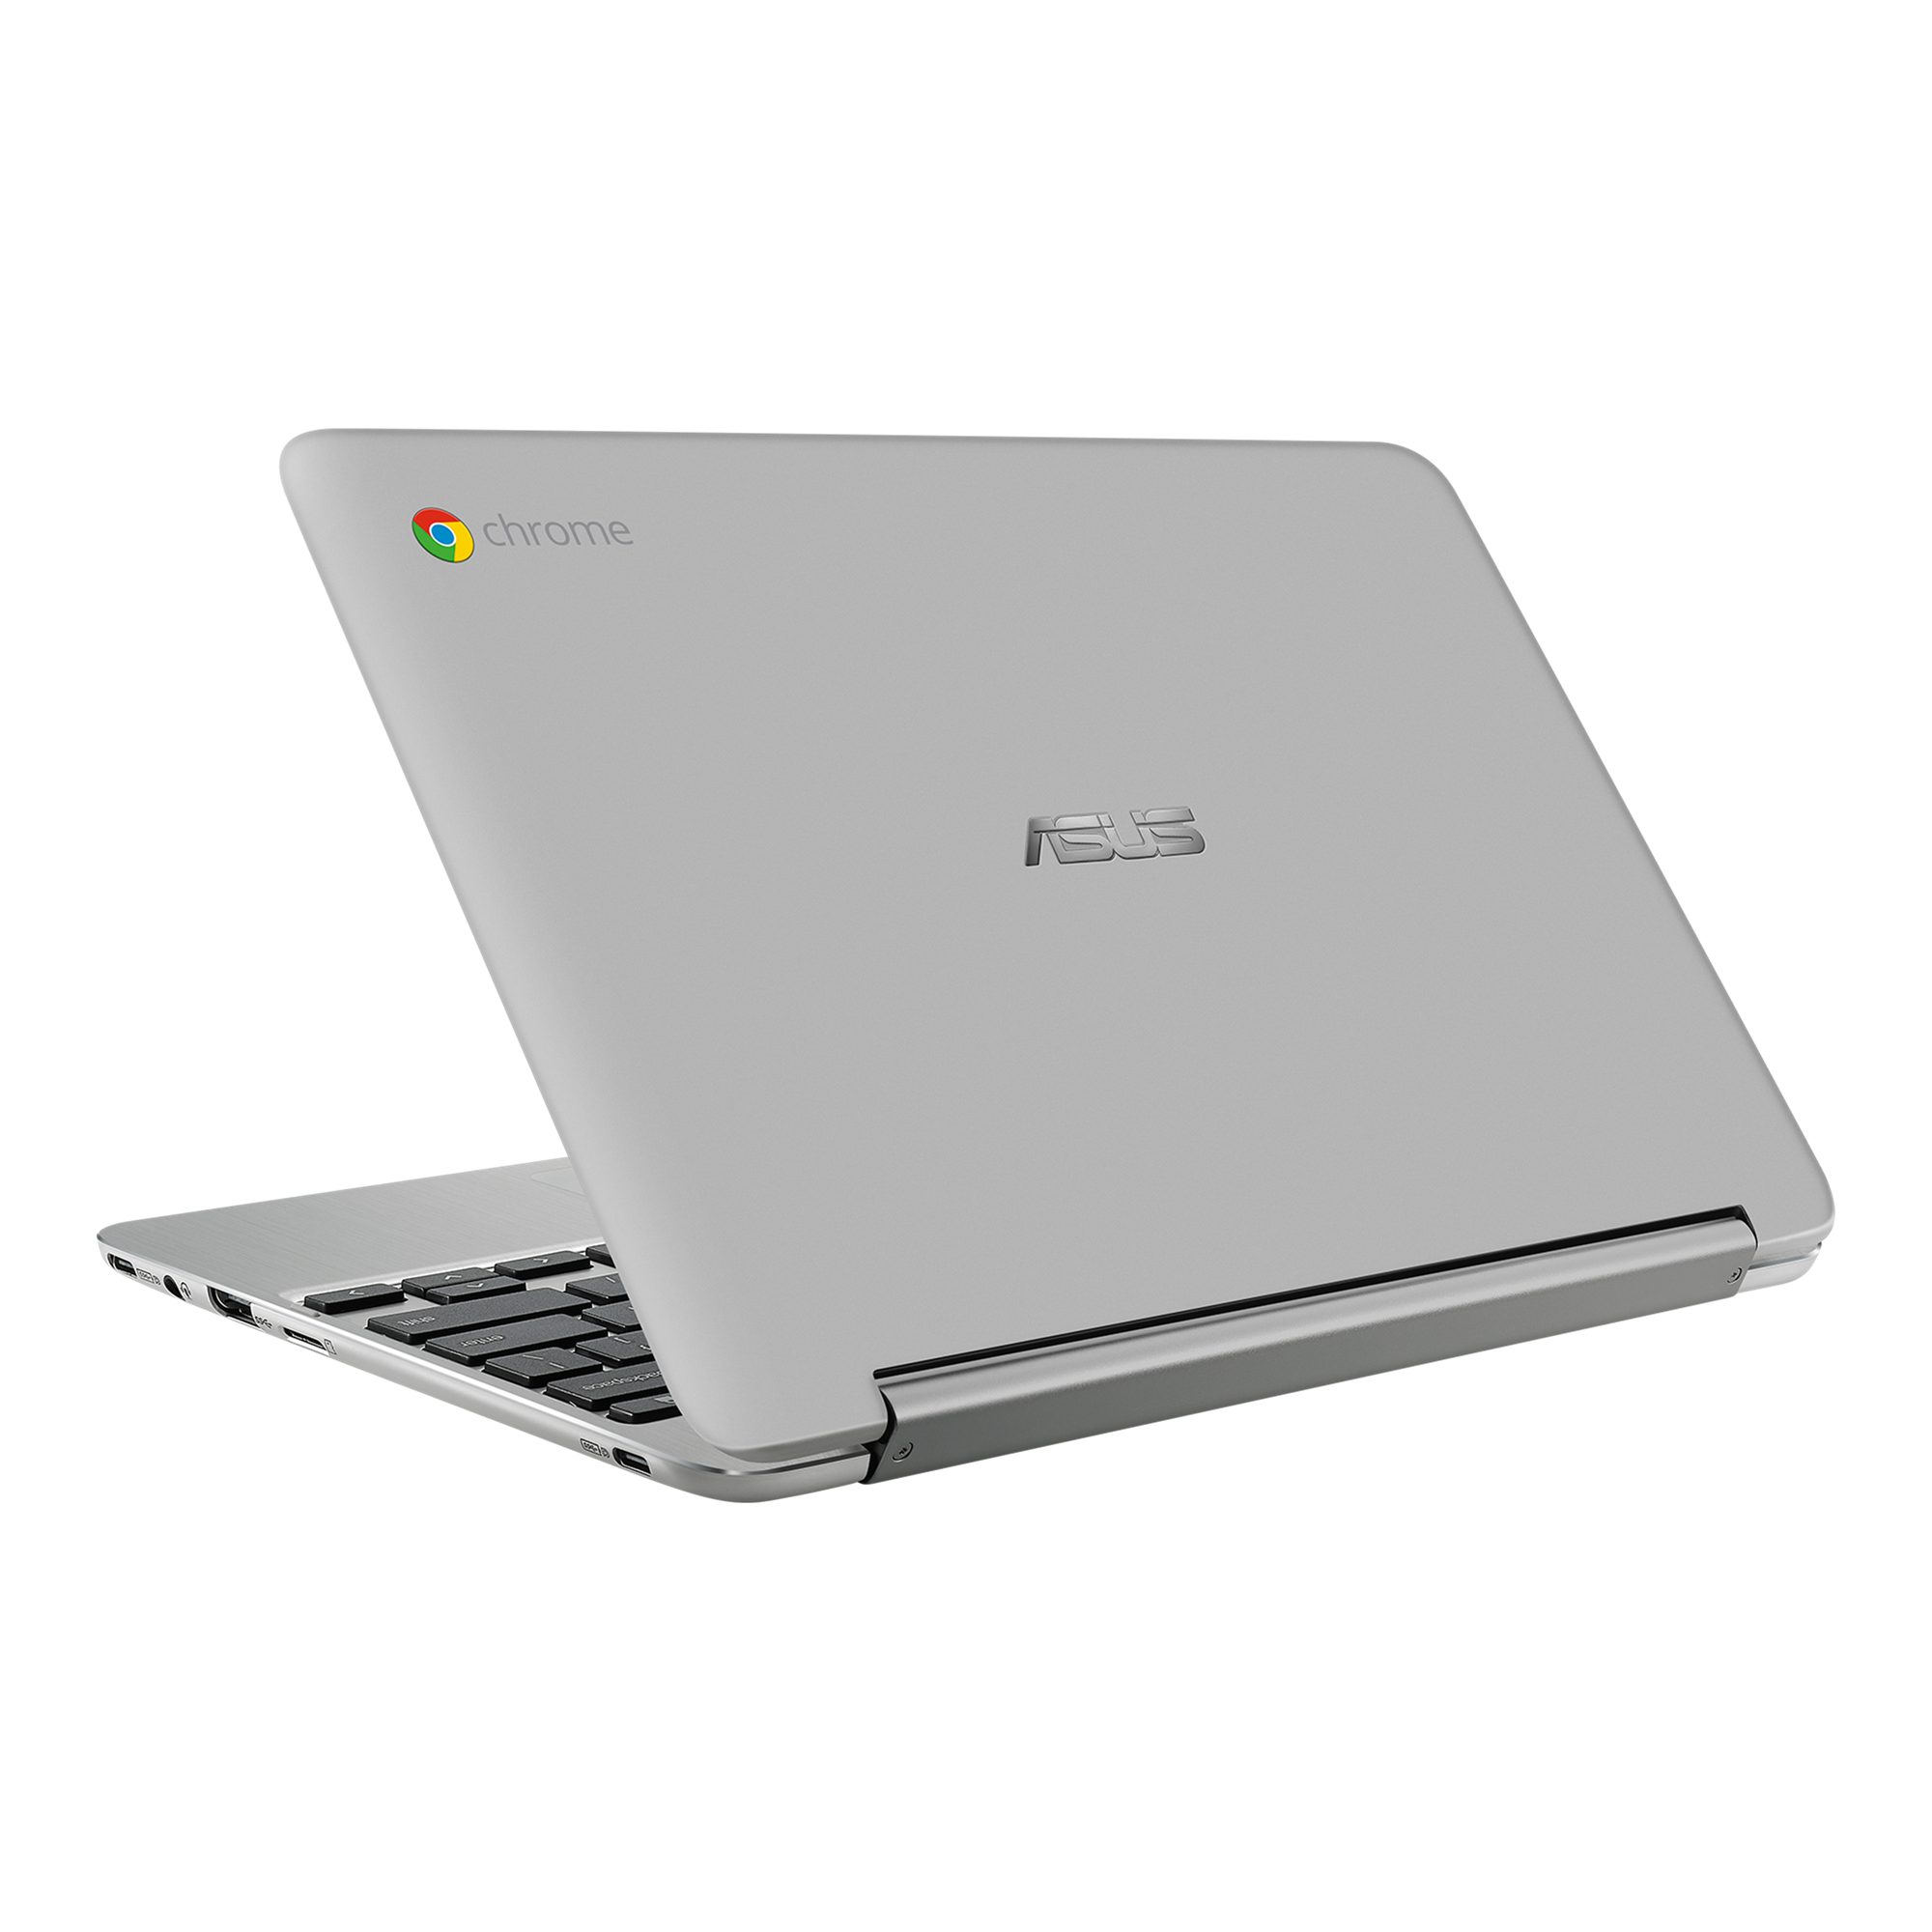 Chromebook ASUS C101P